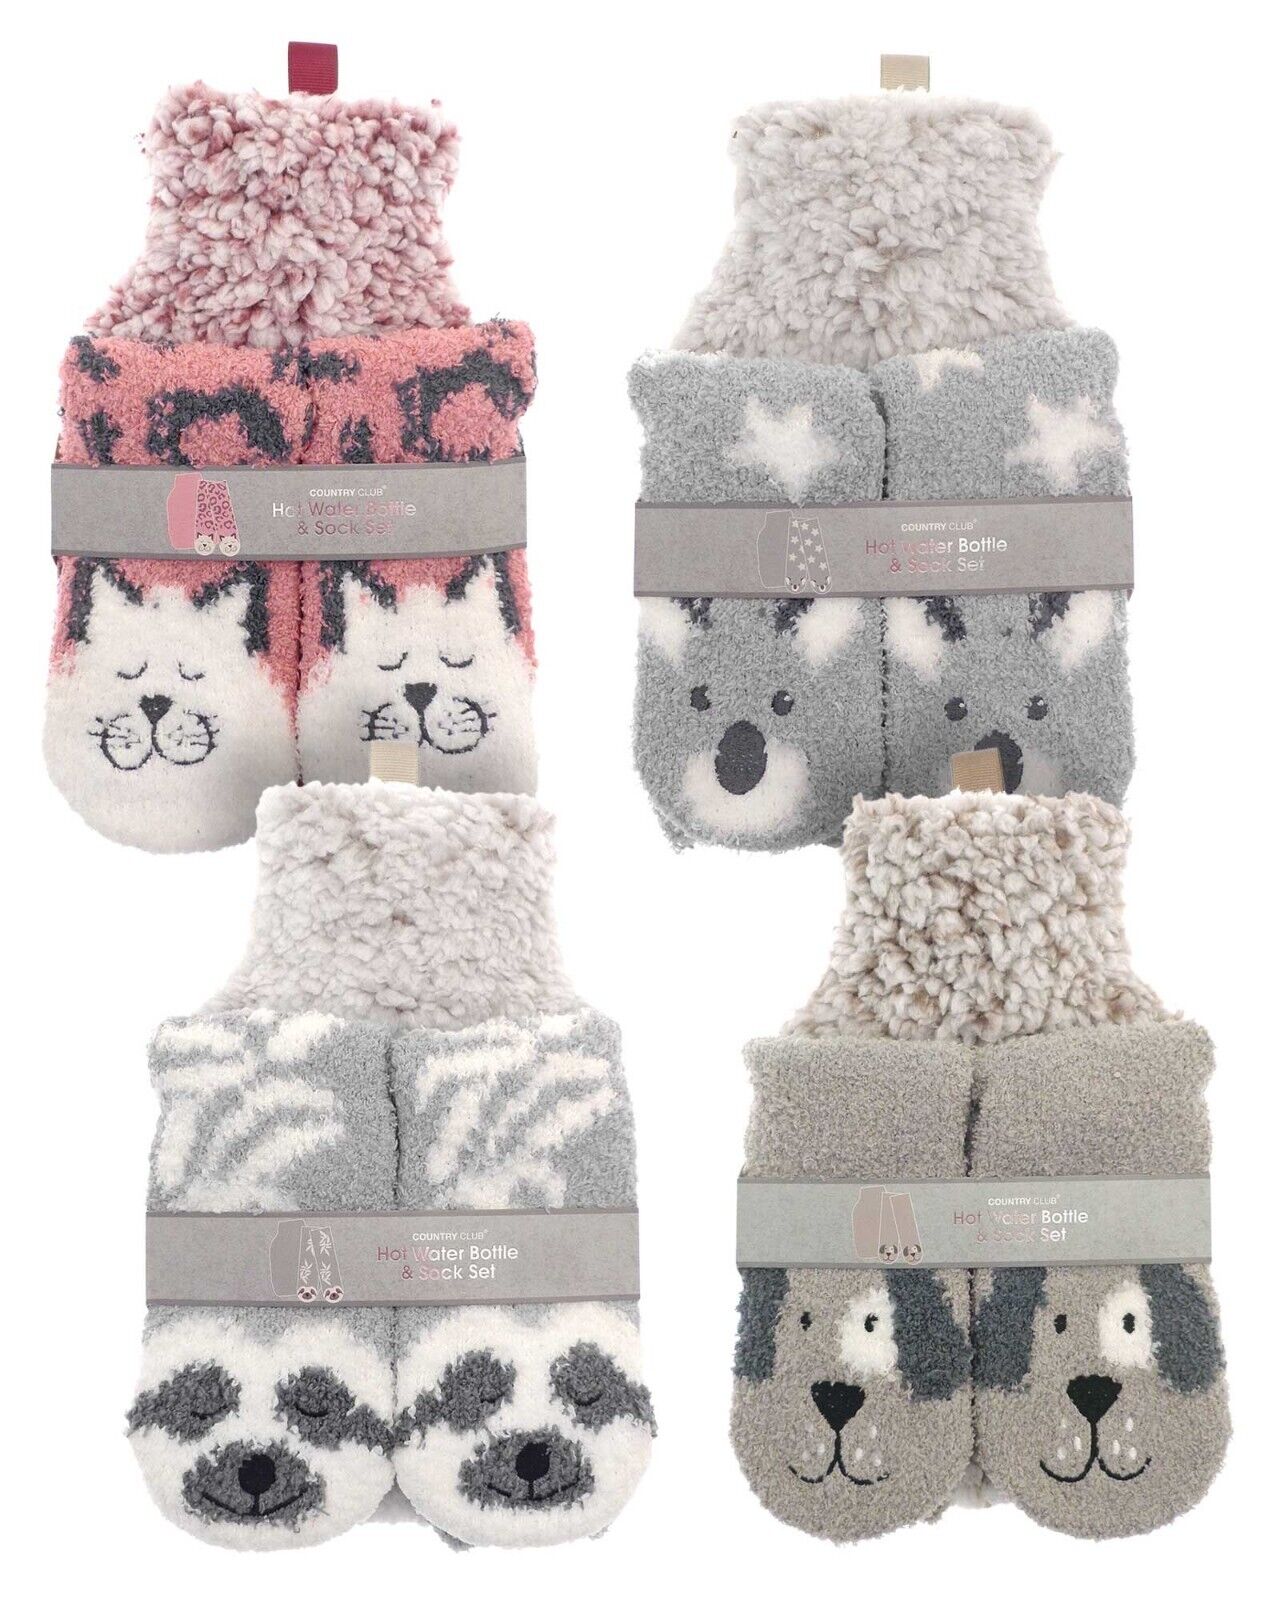 Hot Water Bottle & Socks Knitted Gift Set